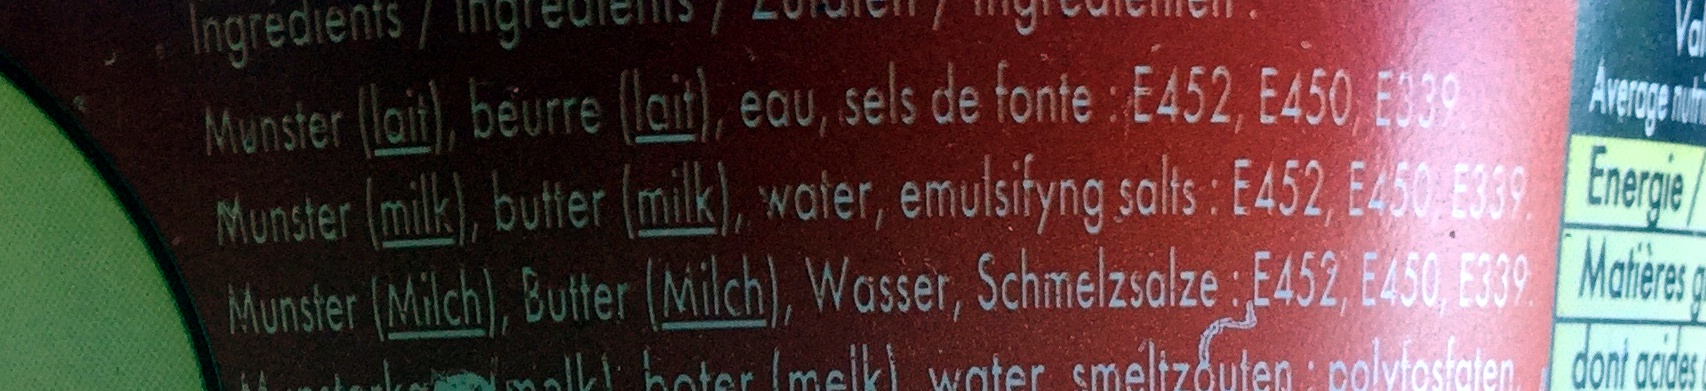 Crème de Munster - Ingrédients